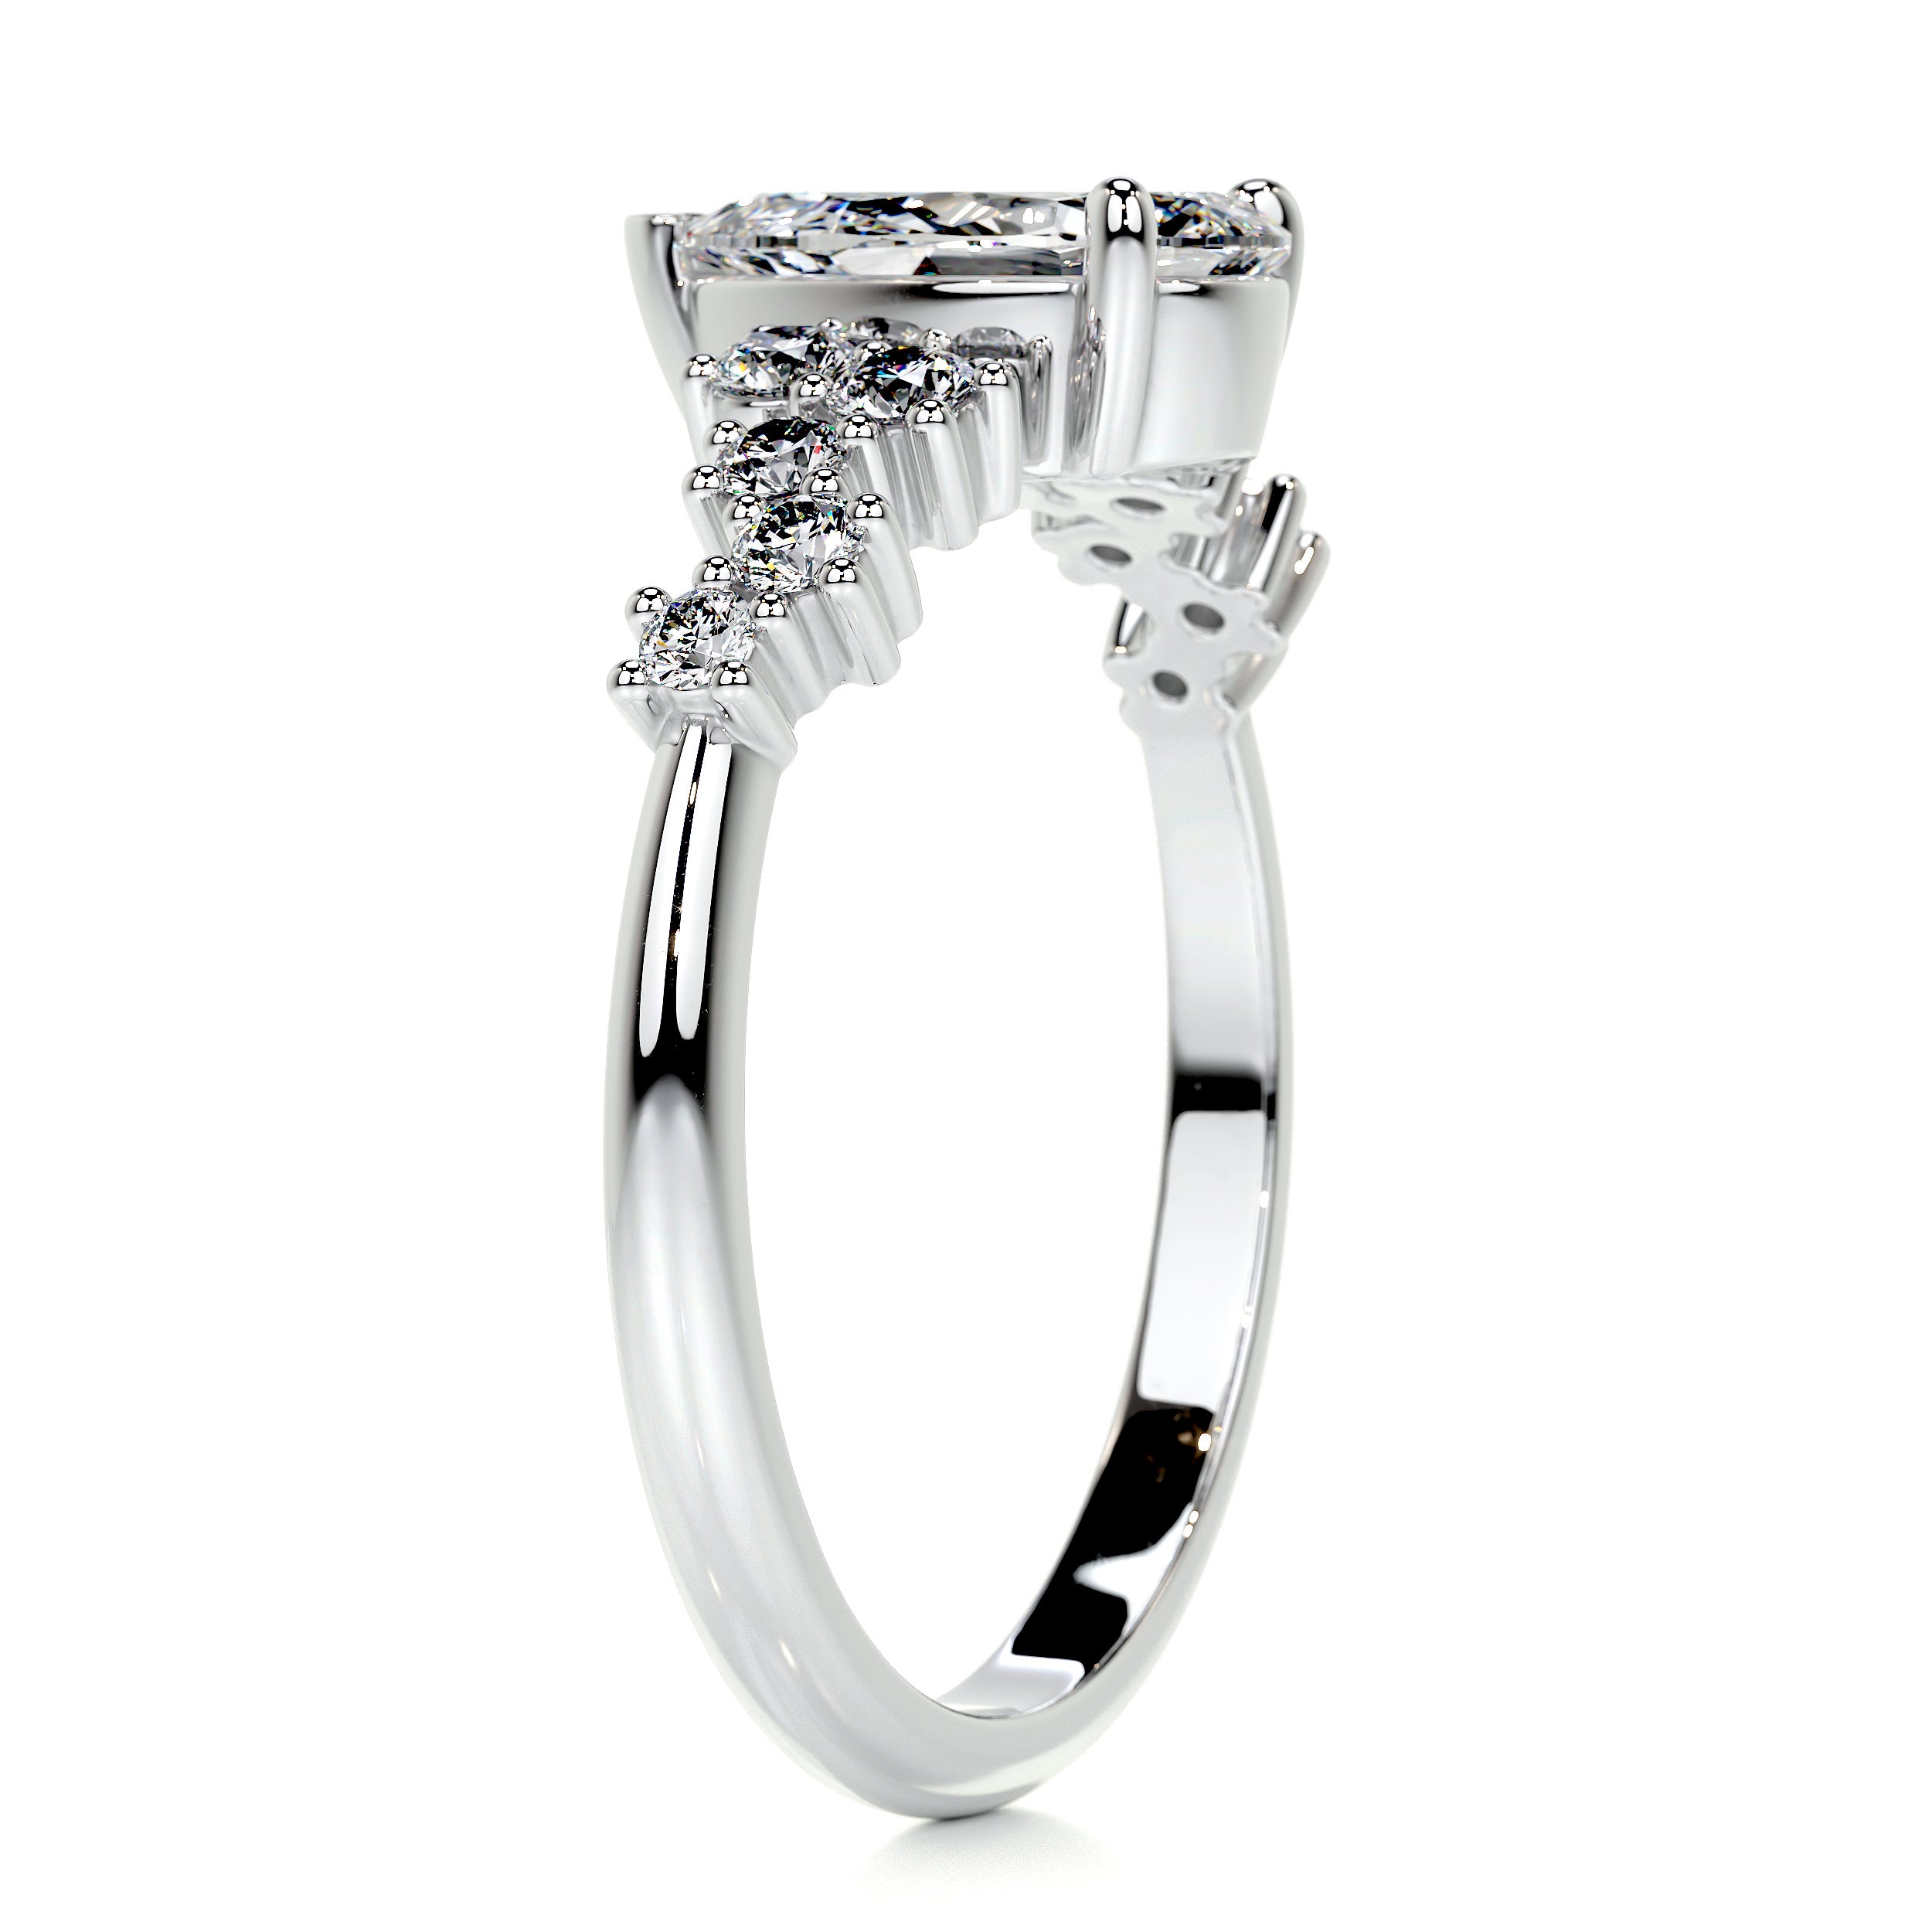 Mabel Diamond Engagement Ring   (1.25 Carat) -14K White Gold